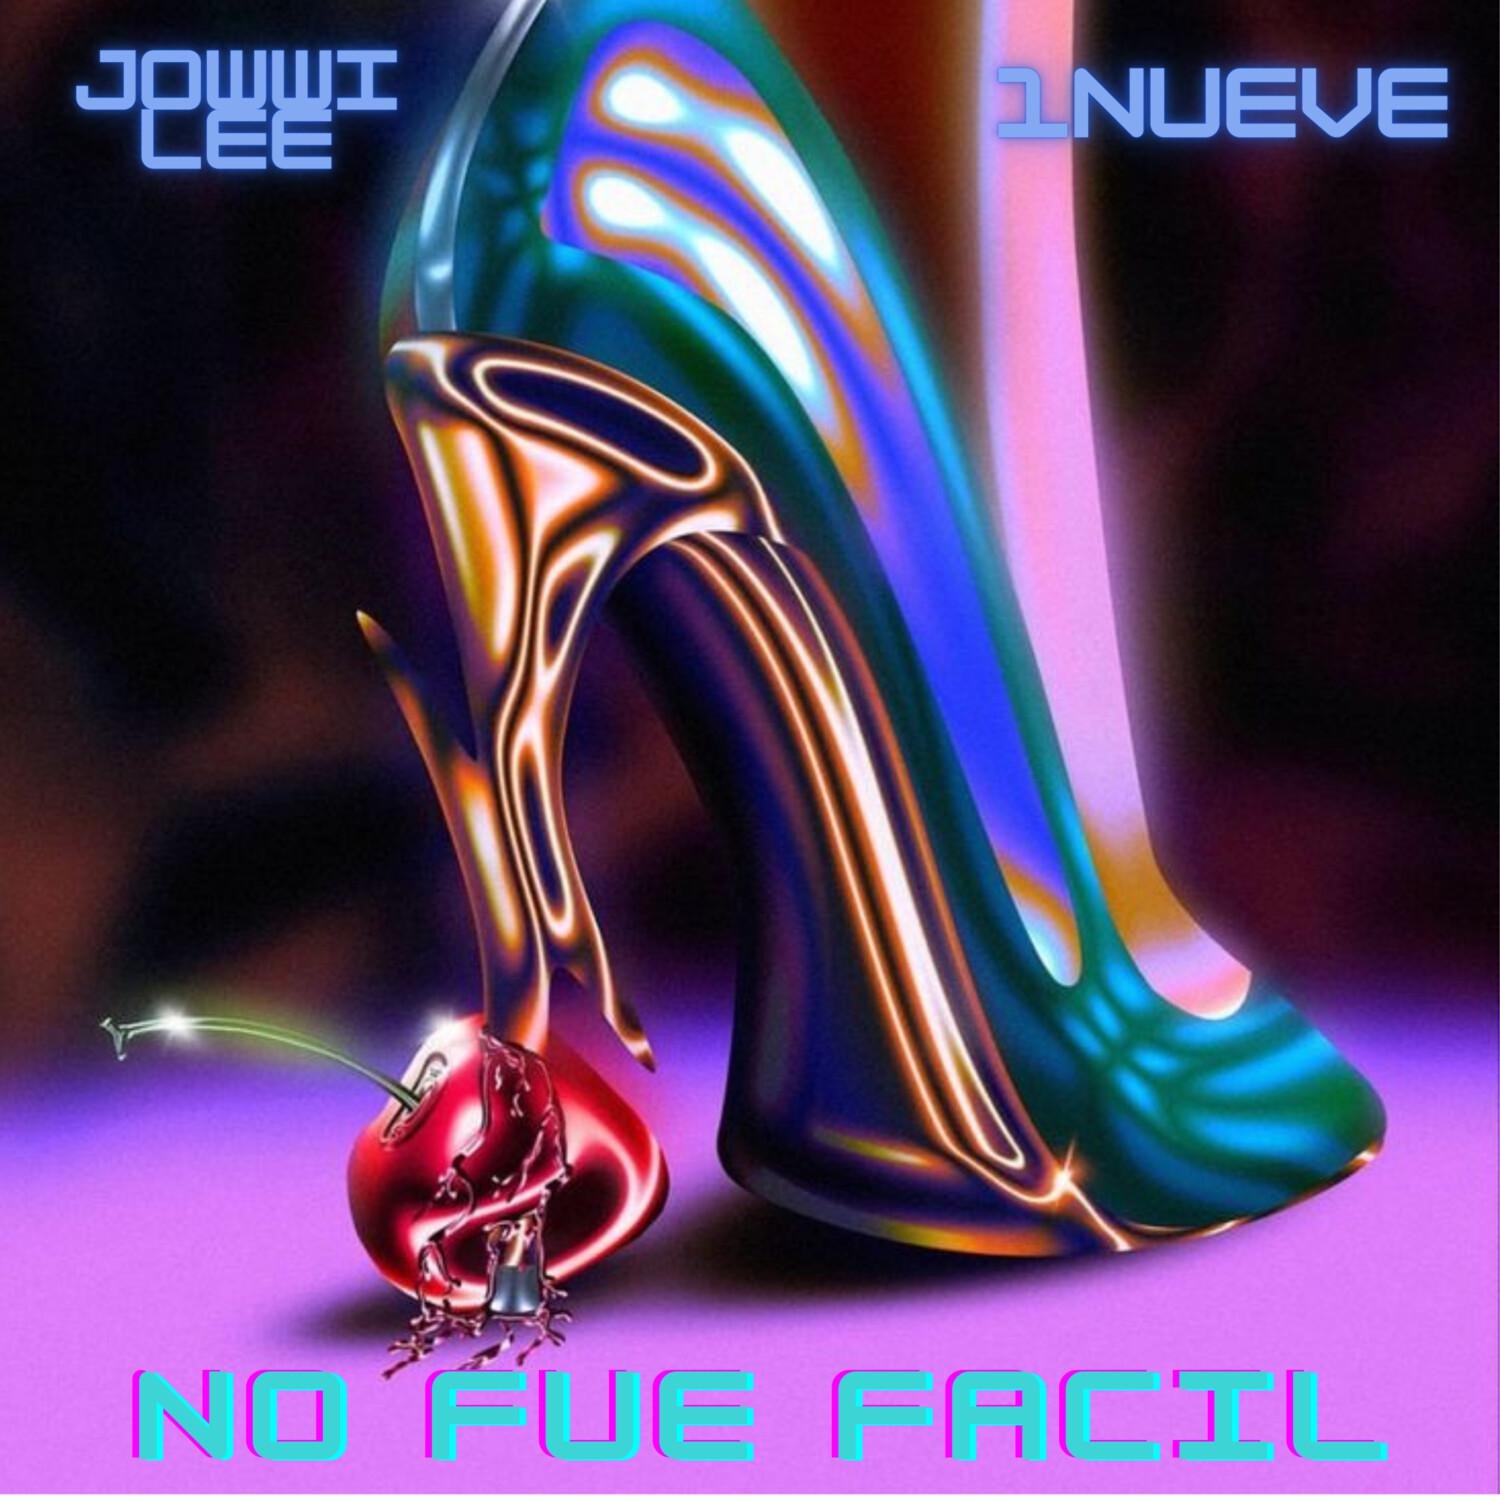 1NUEVE - No Fue Facil